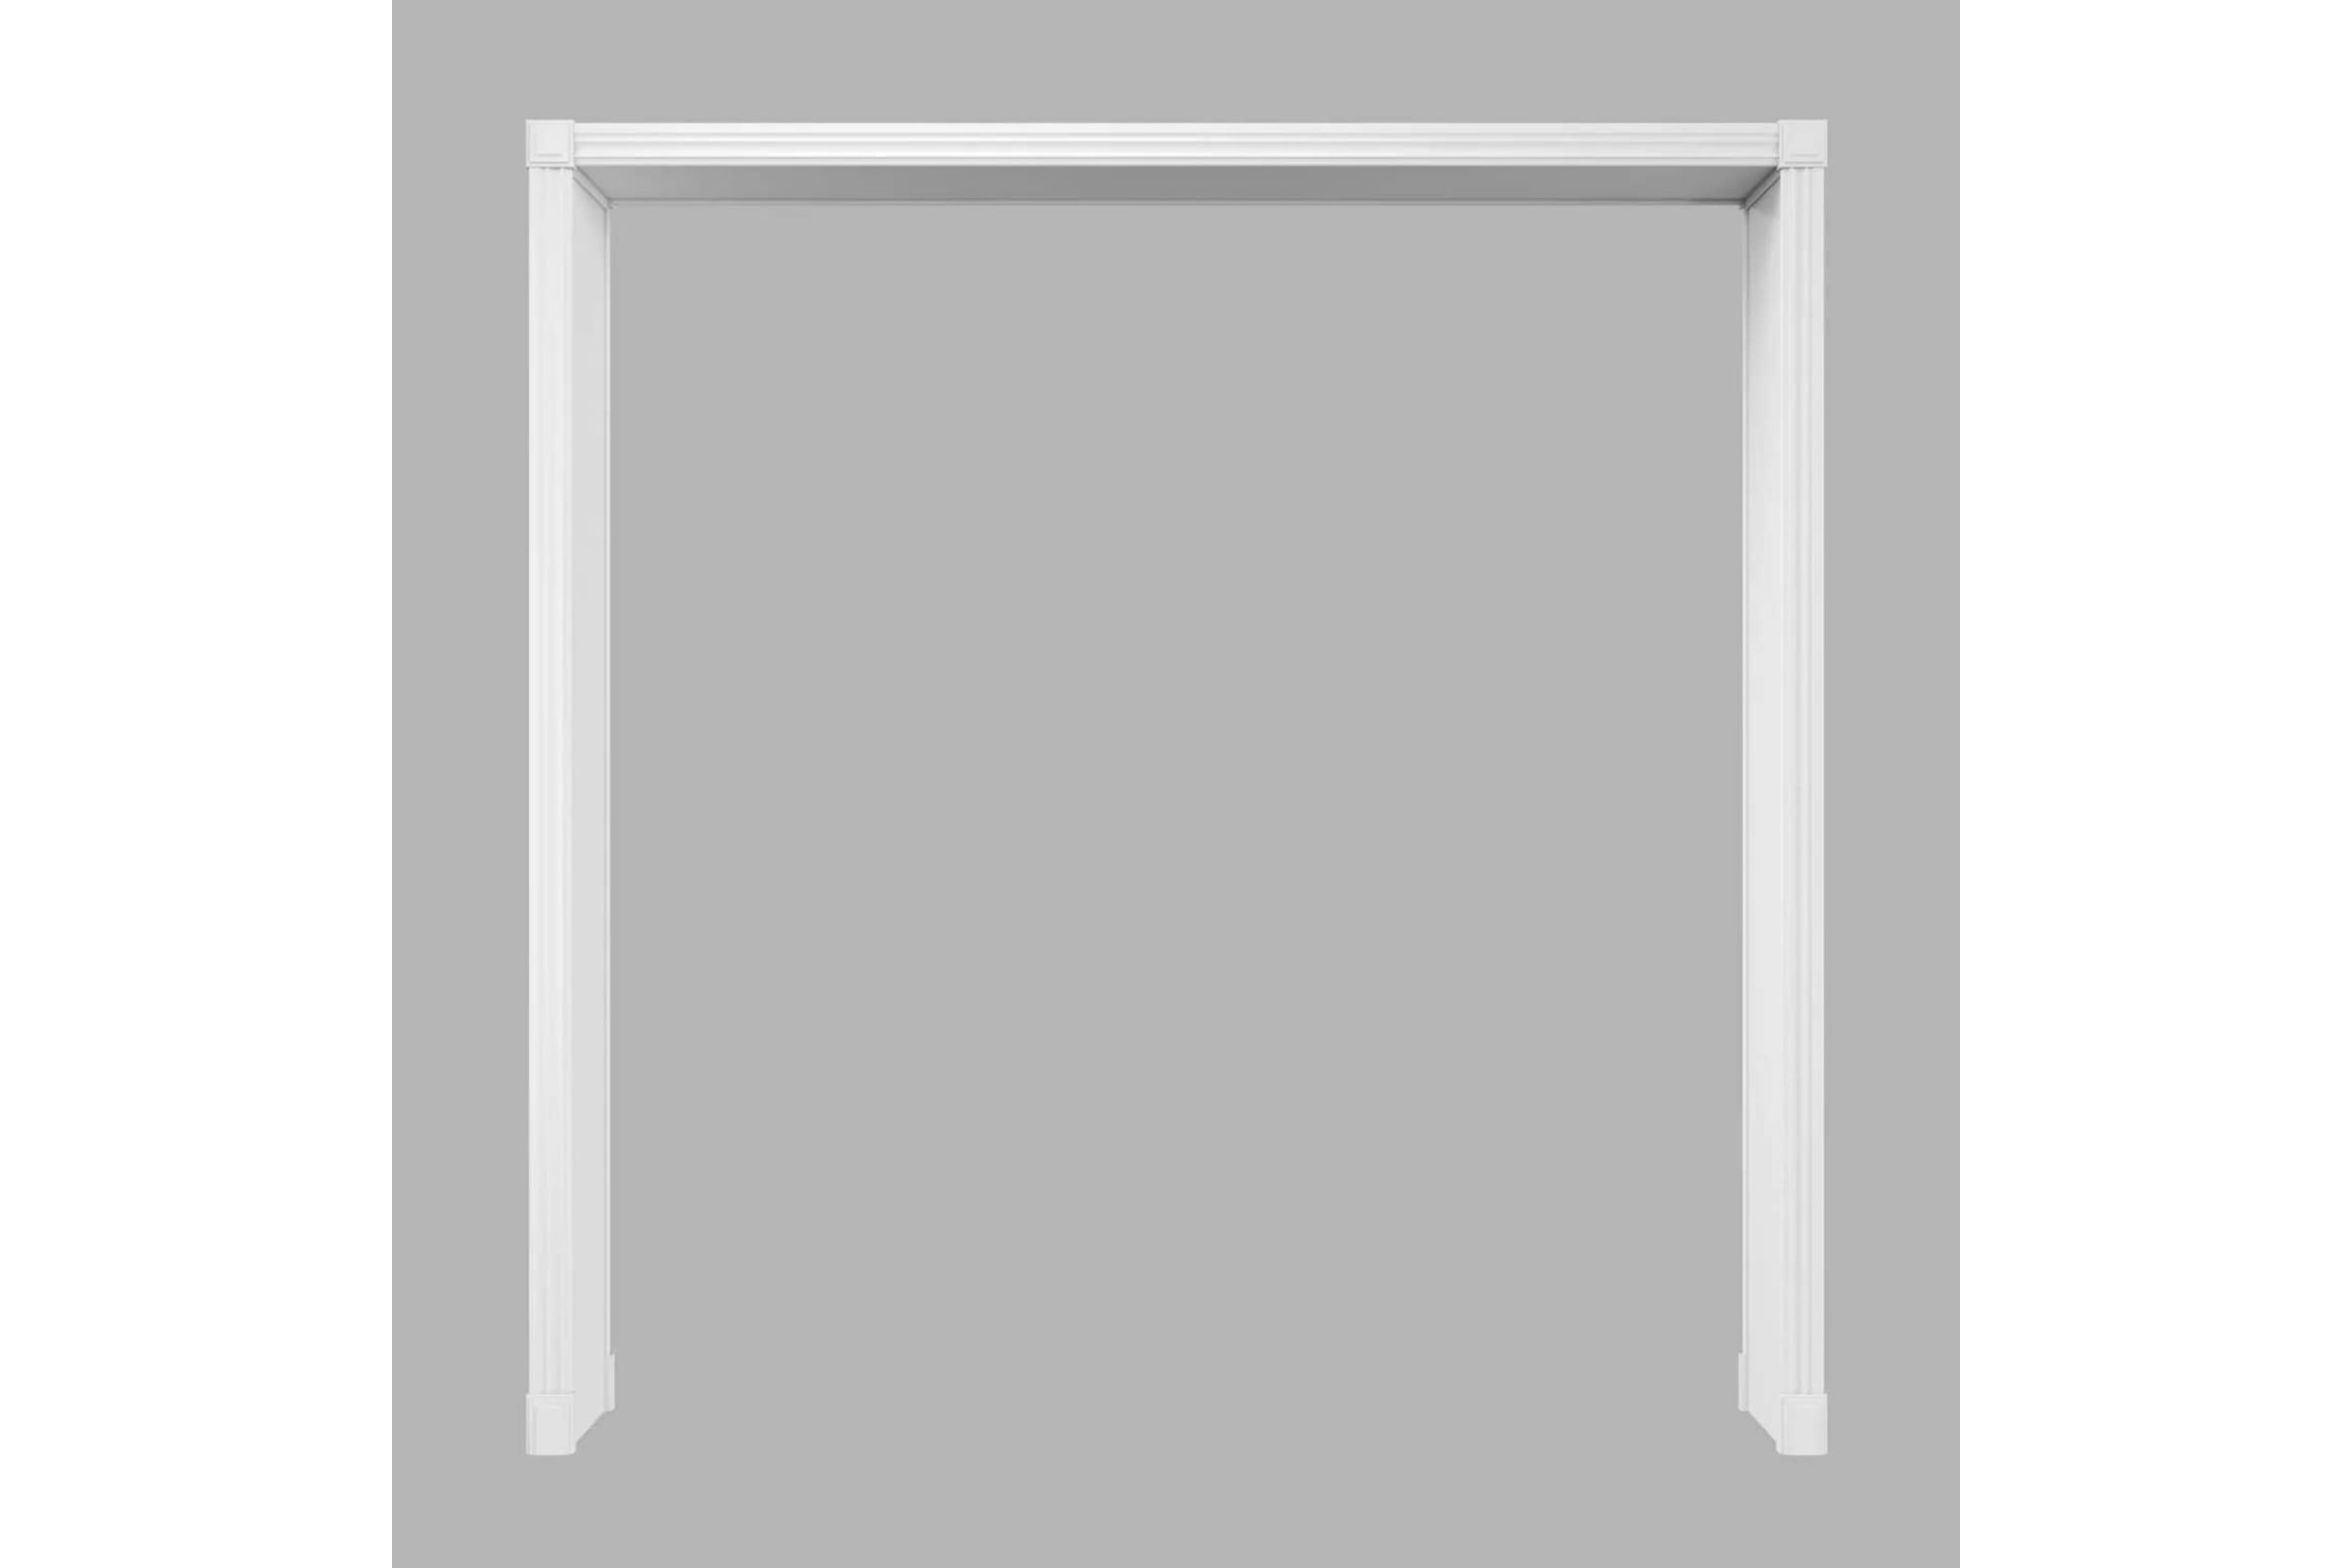 Cosca Decor , Портал Квадро, белый, ламинированный МДФ, набор СПБ074364